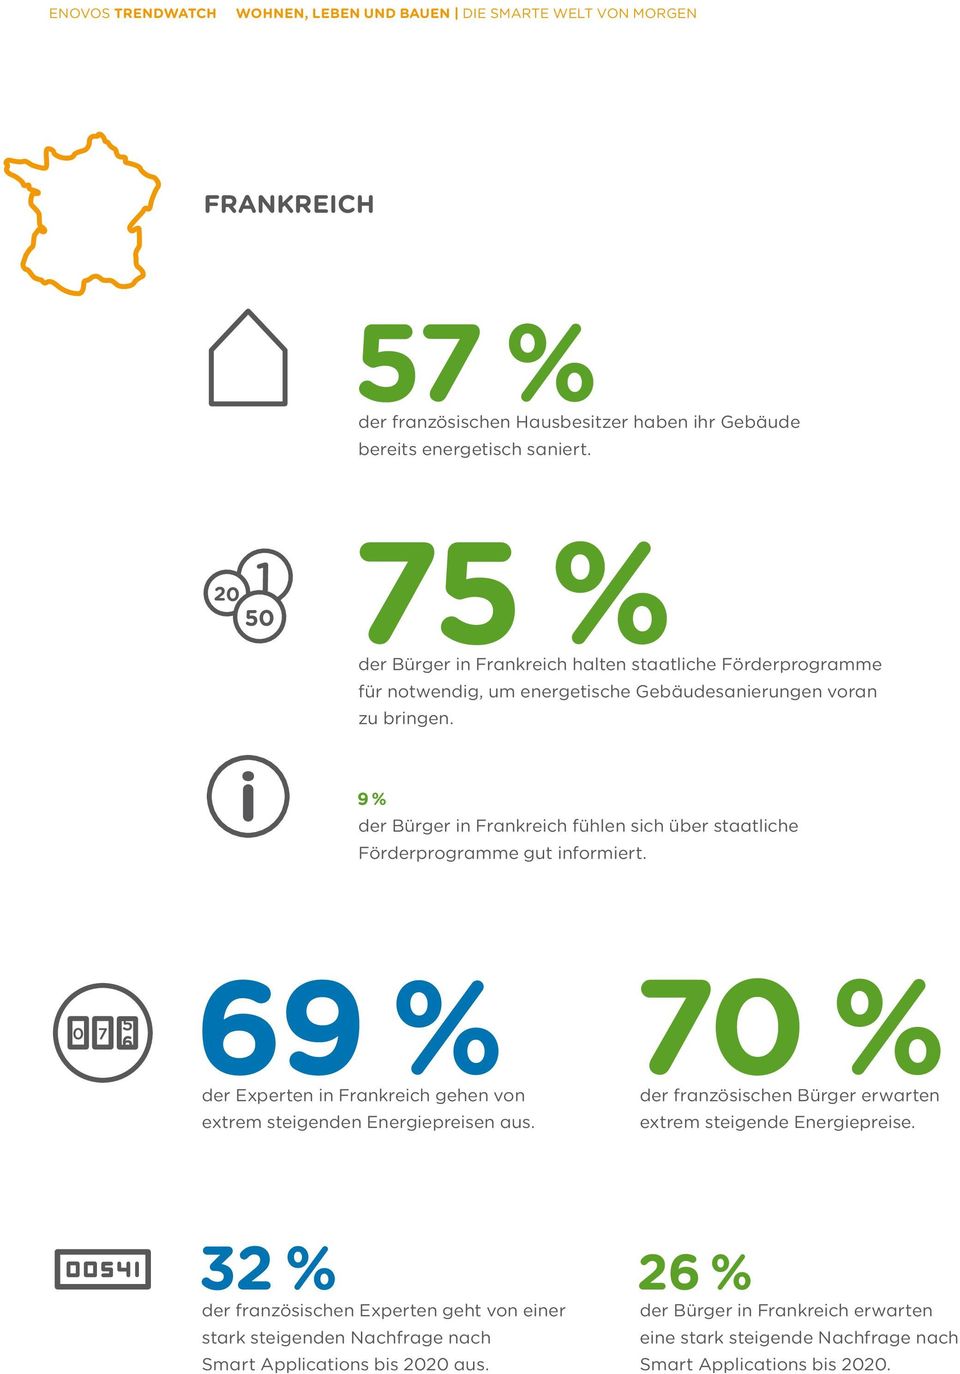 9 % der Bürger in Frankreich fühlen sich über staatliche Förderprogramme gut informiert.